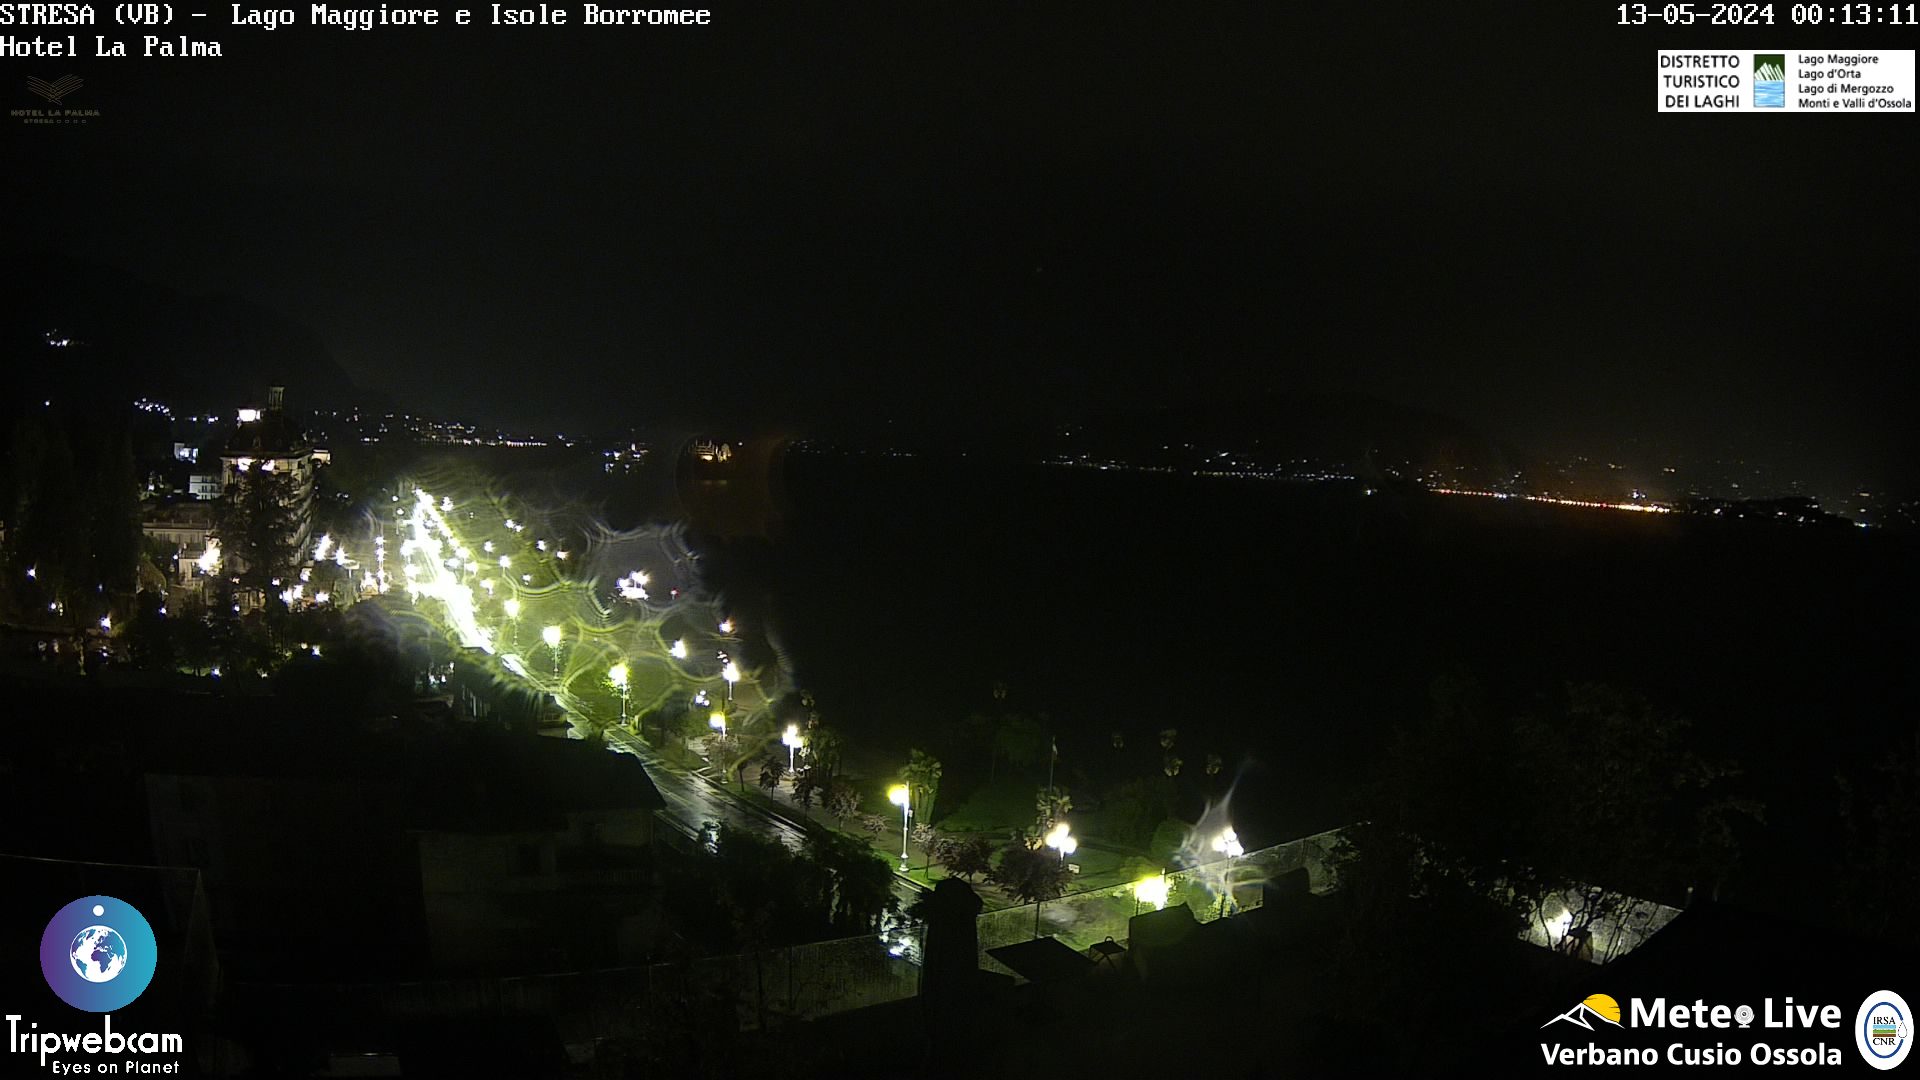 Stresa (Lago Maggiore) Di. 01:18